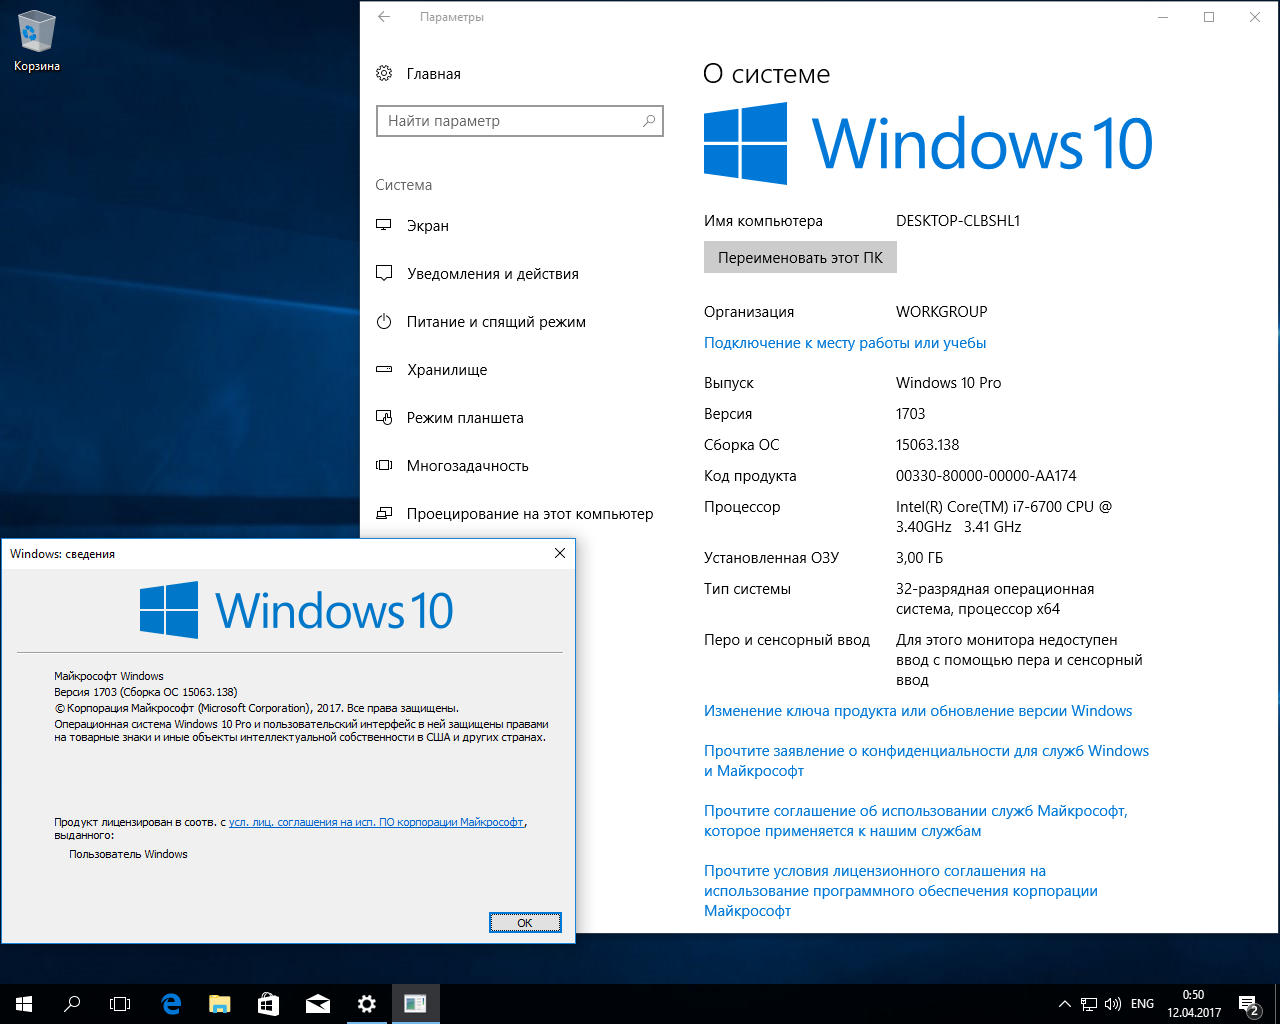 Про пробную версию. Пробная виндовс 10. Windows 10 Pro. Пробная версия виндовс. Виндовс 10 Redstone.